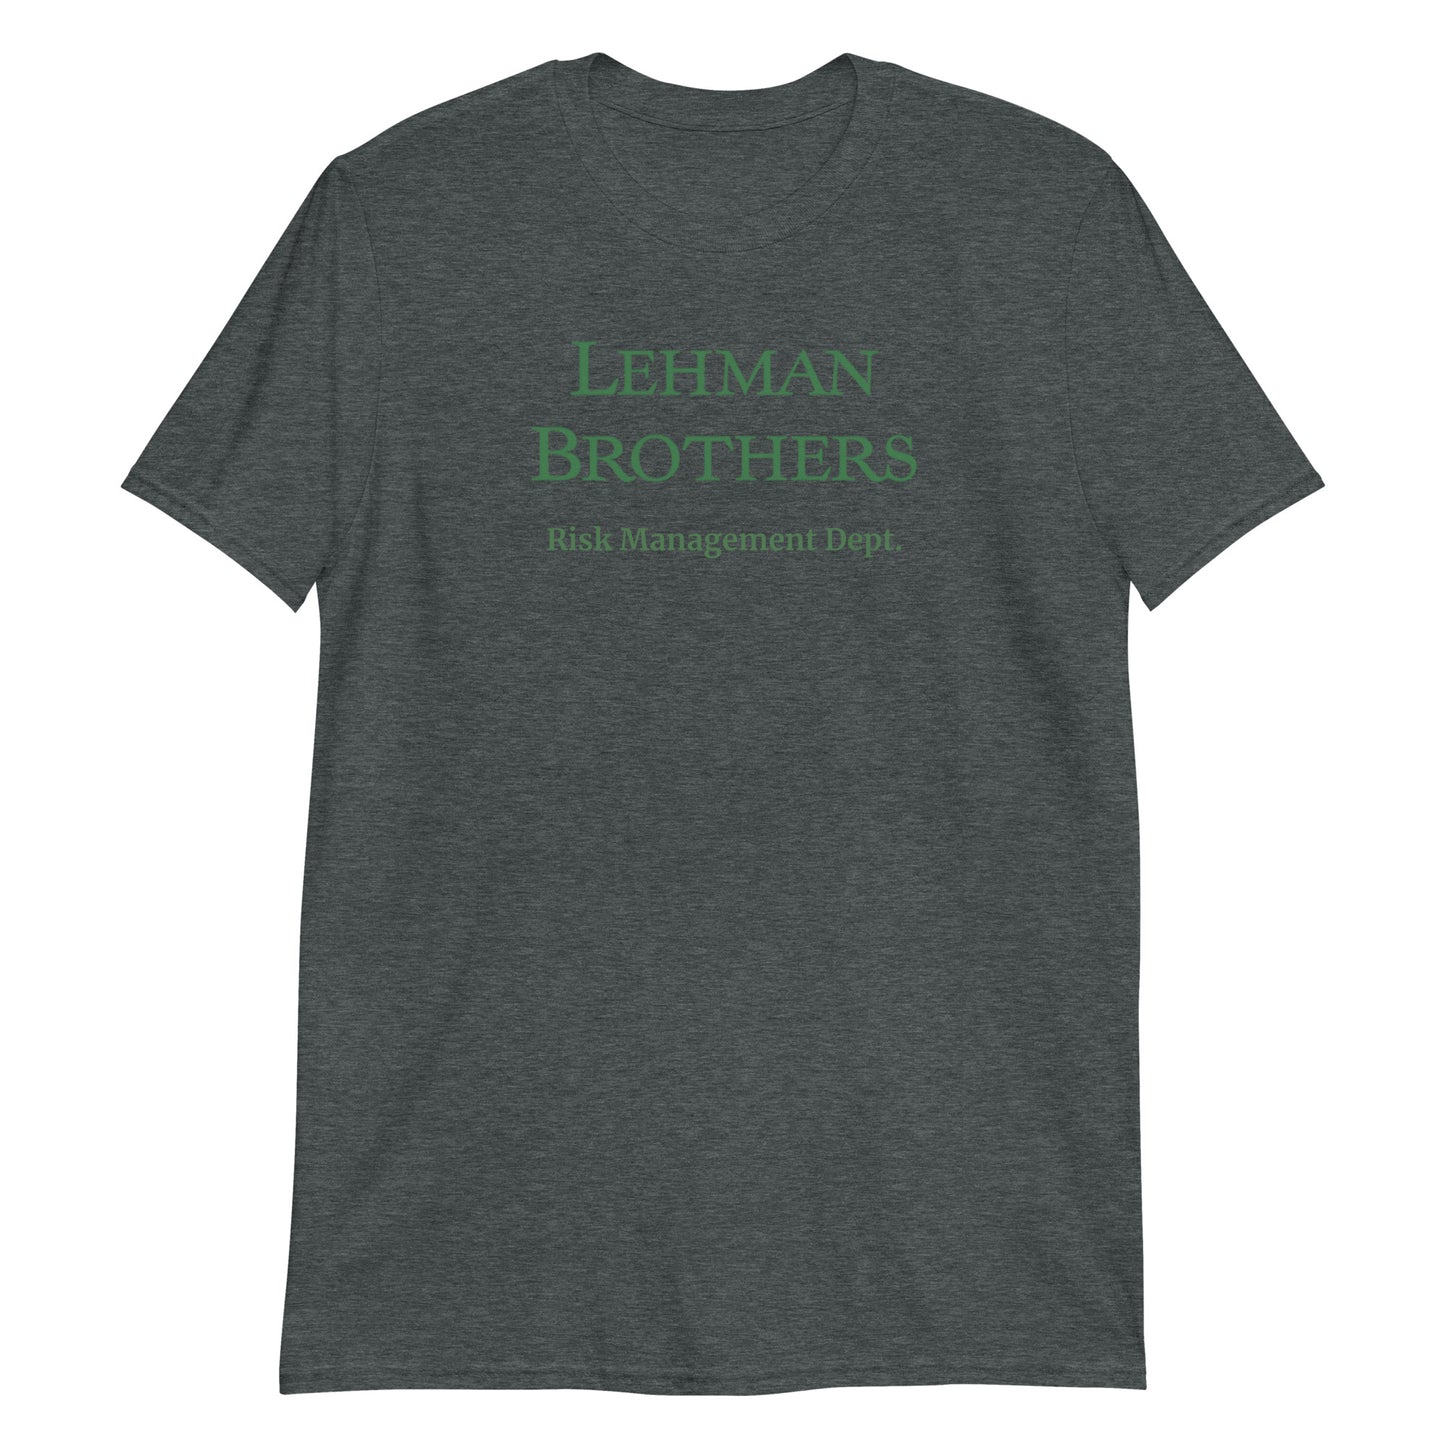 Lehman Brothers Risk Management Dept. Unisex T-Shirt